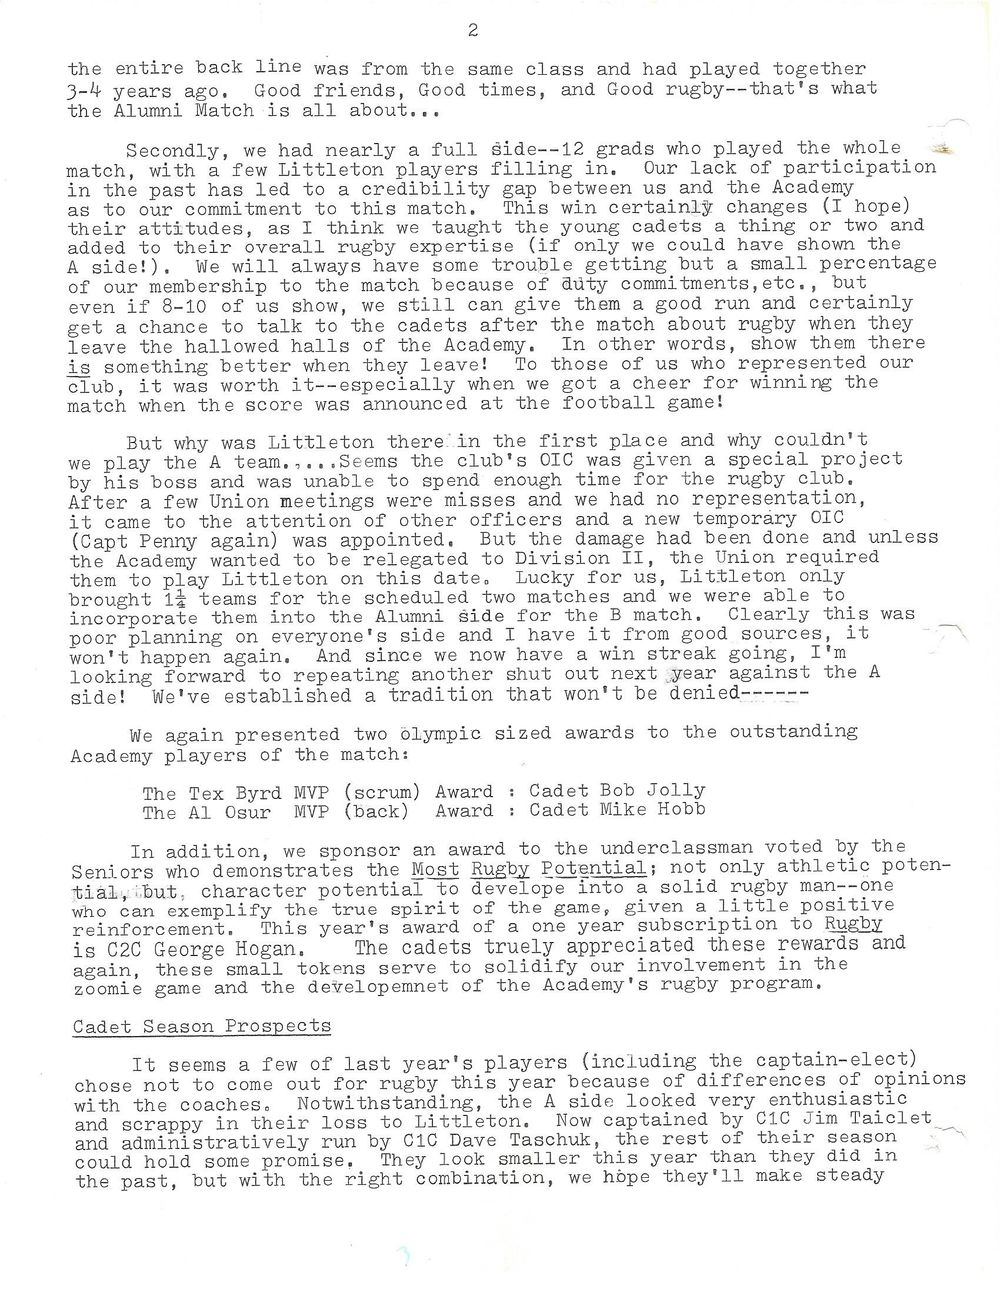 1981 10 Newsletter 2.jpg